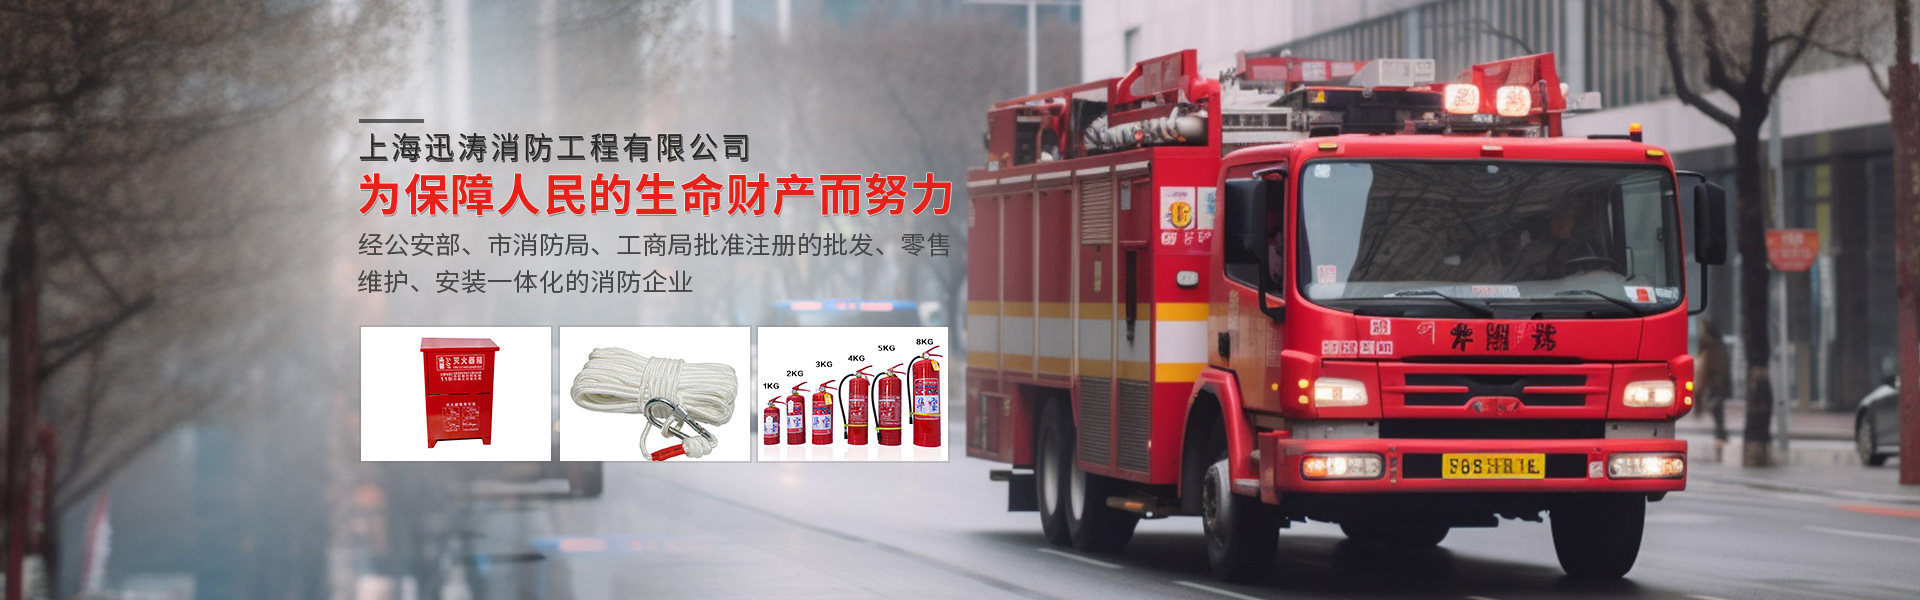 上海迅濤消防工程有限公司